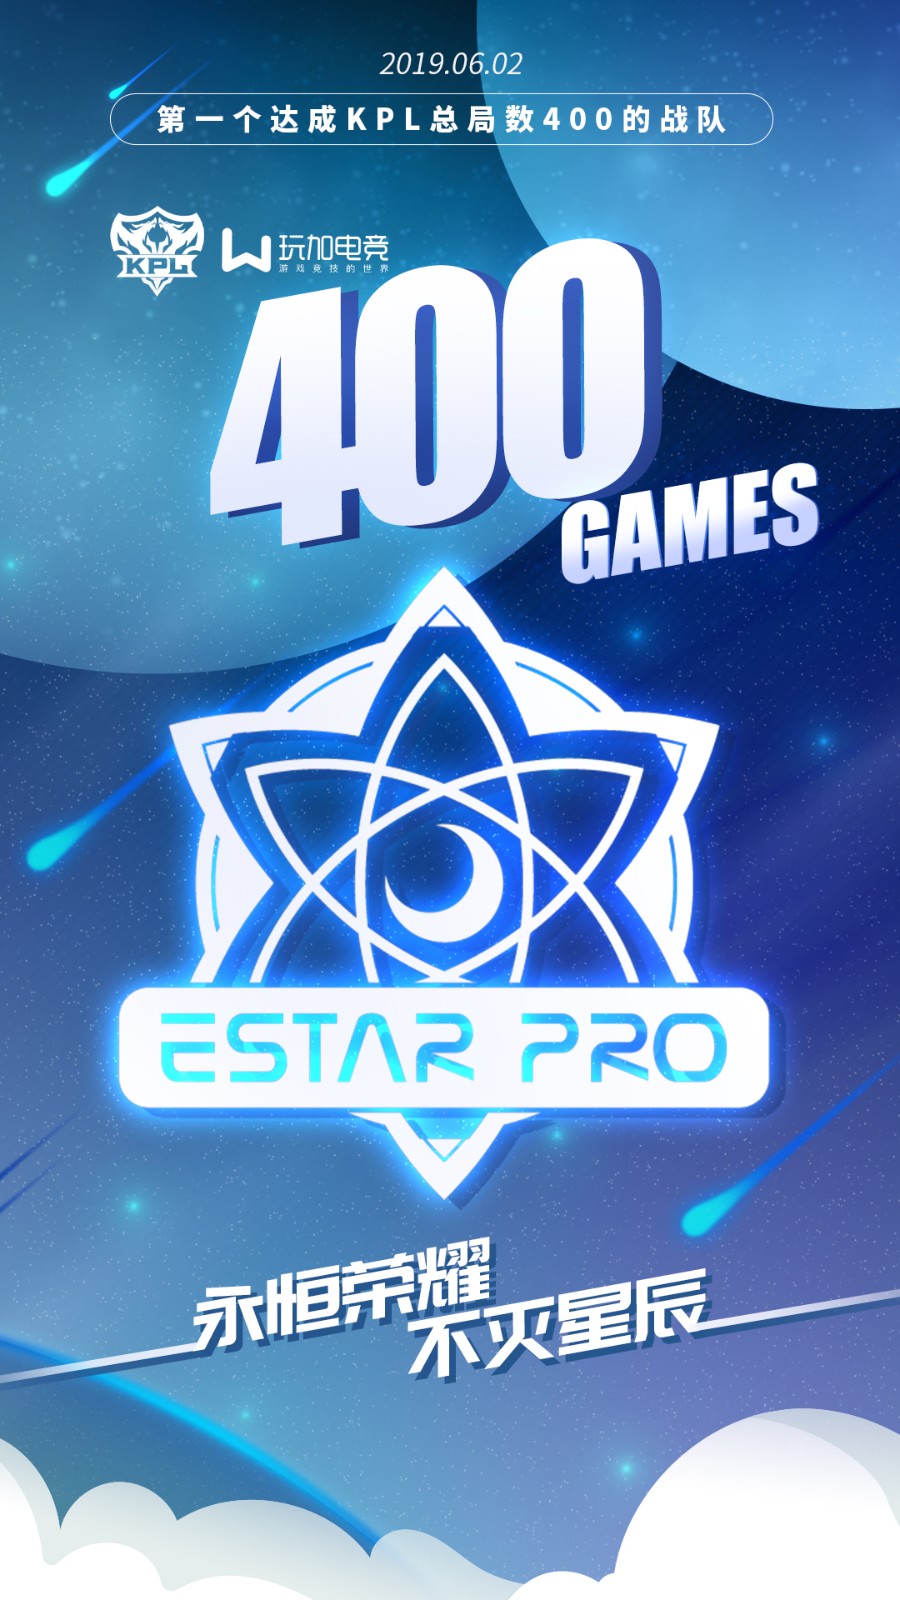 [里程碑] 恭喜eStarPro达成KPL400局成就